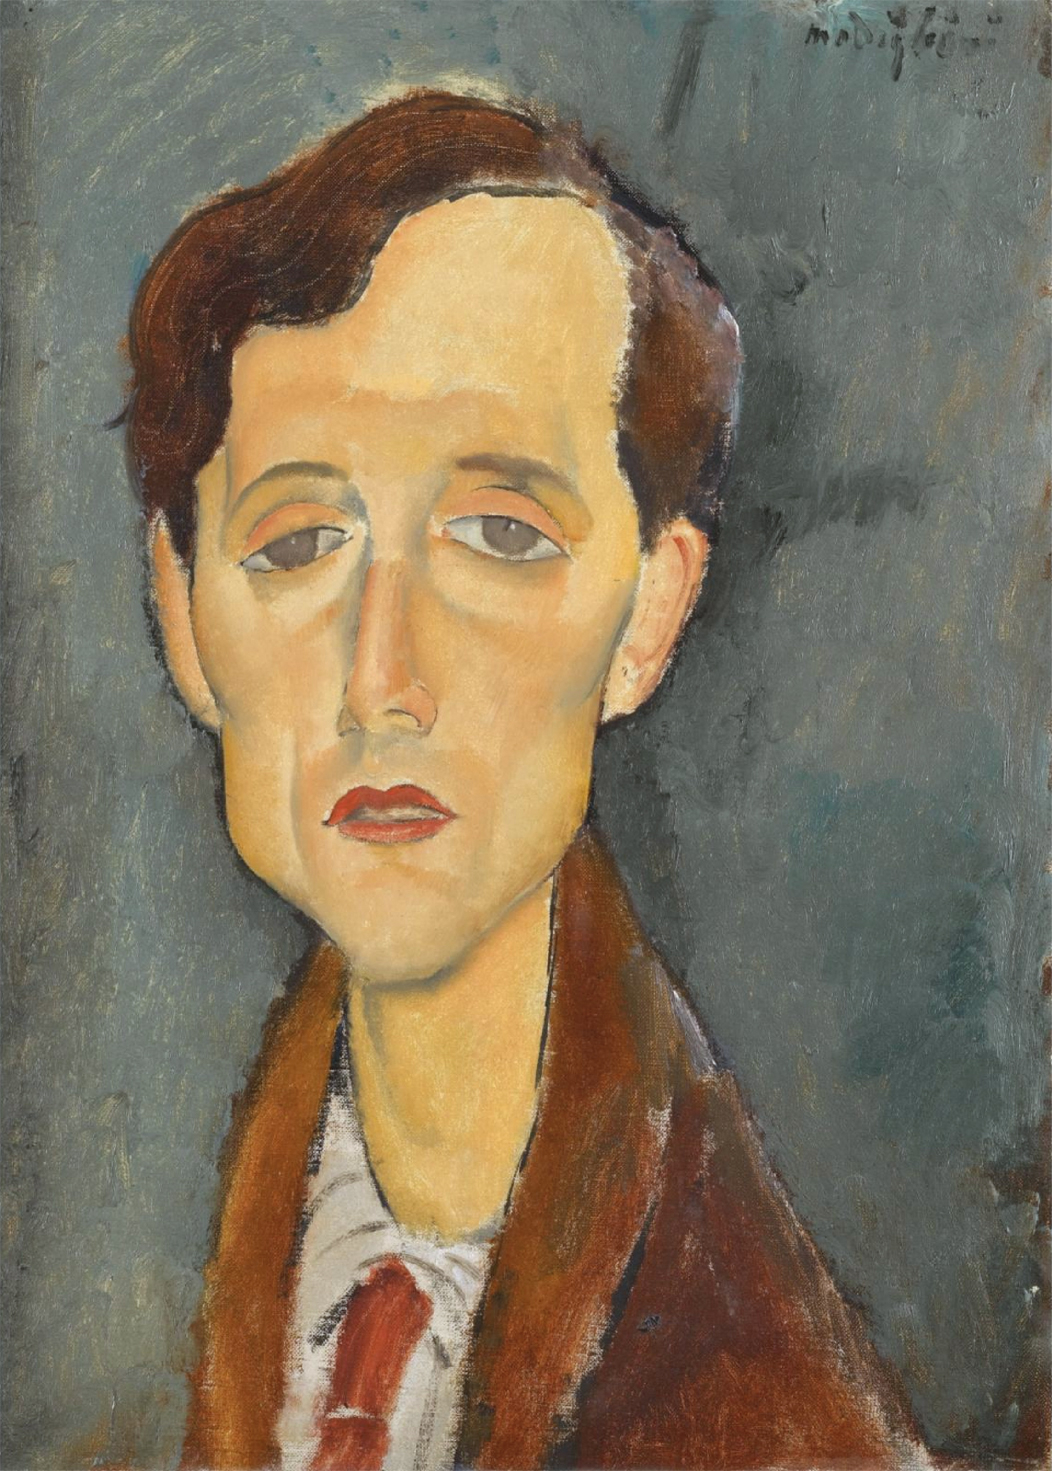 Frans Hellens by Amedeo Modigliani - 1919 - 46 x 34cm coleção privada